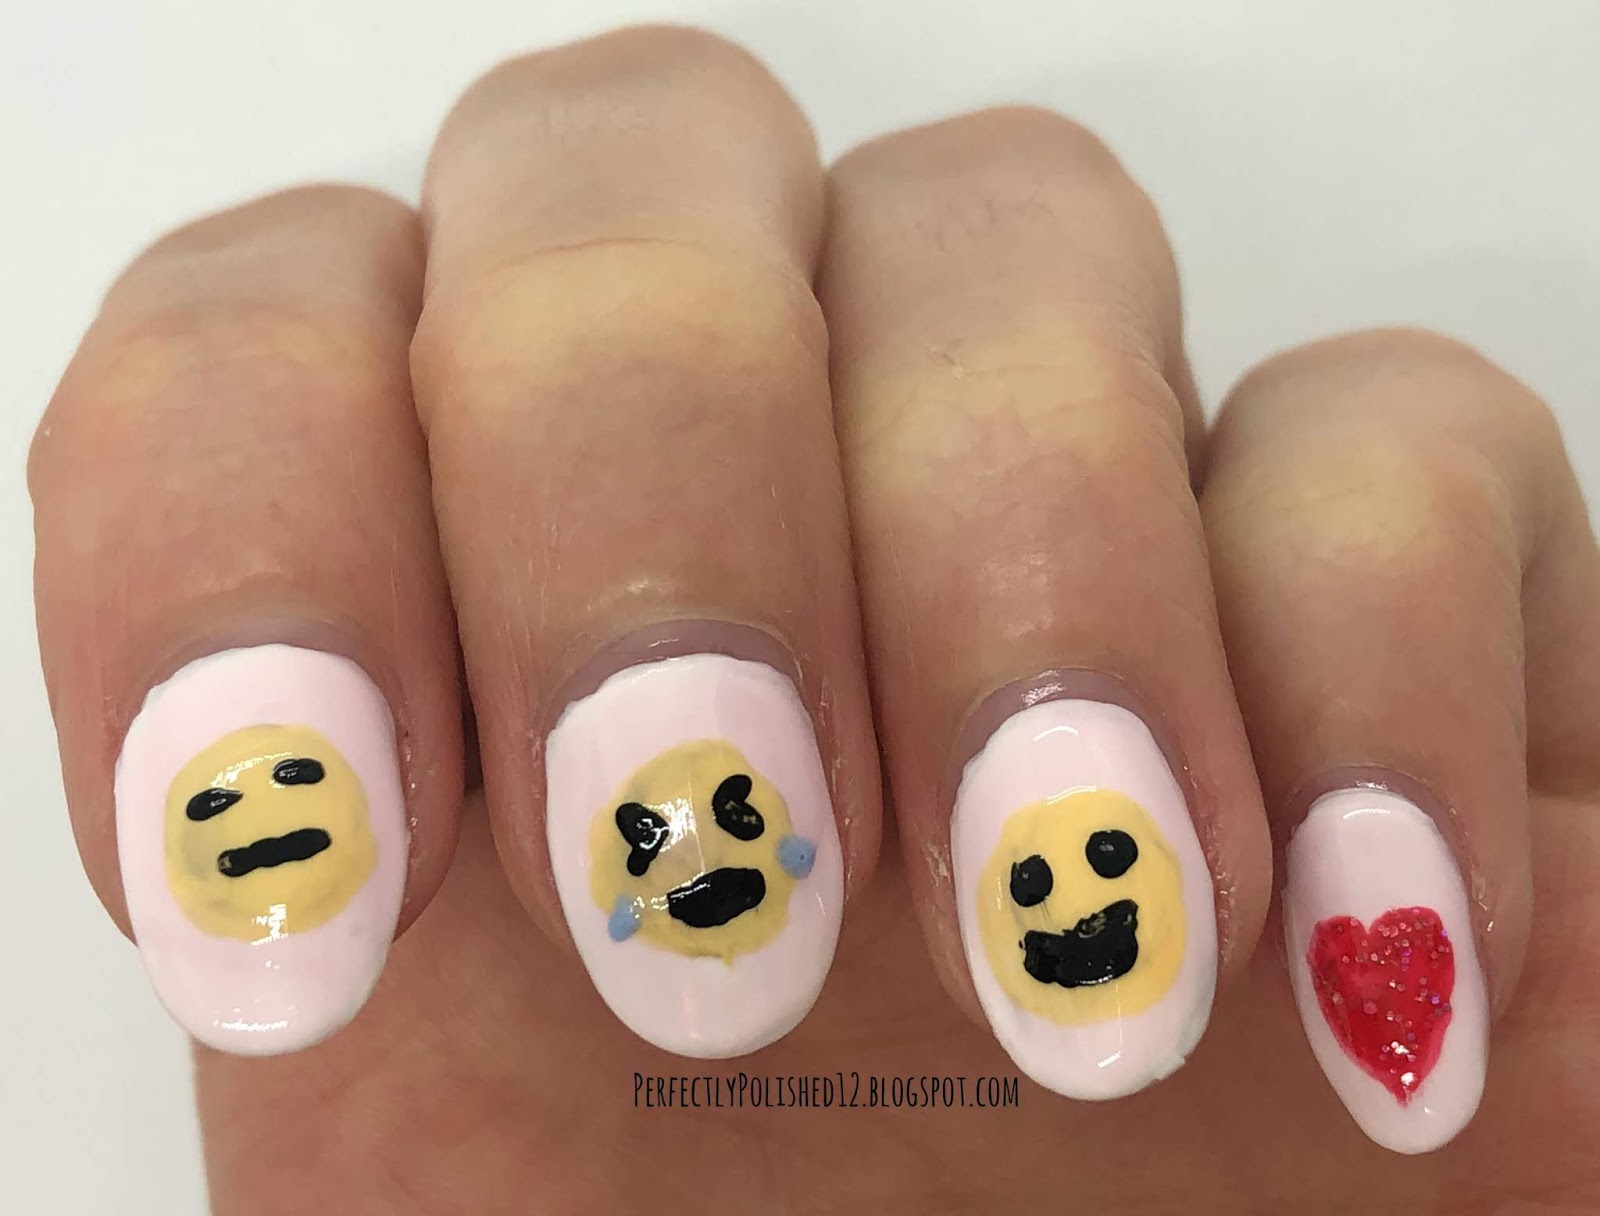 9. "Creative Poop Emoji Nail Art" - wide 9